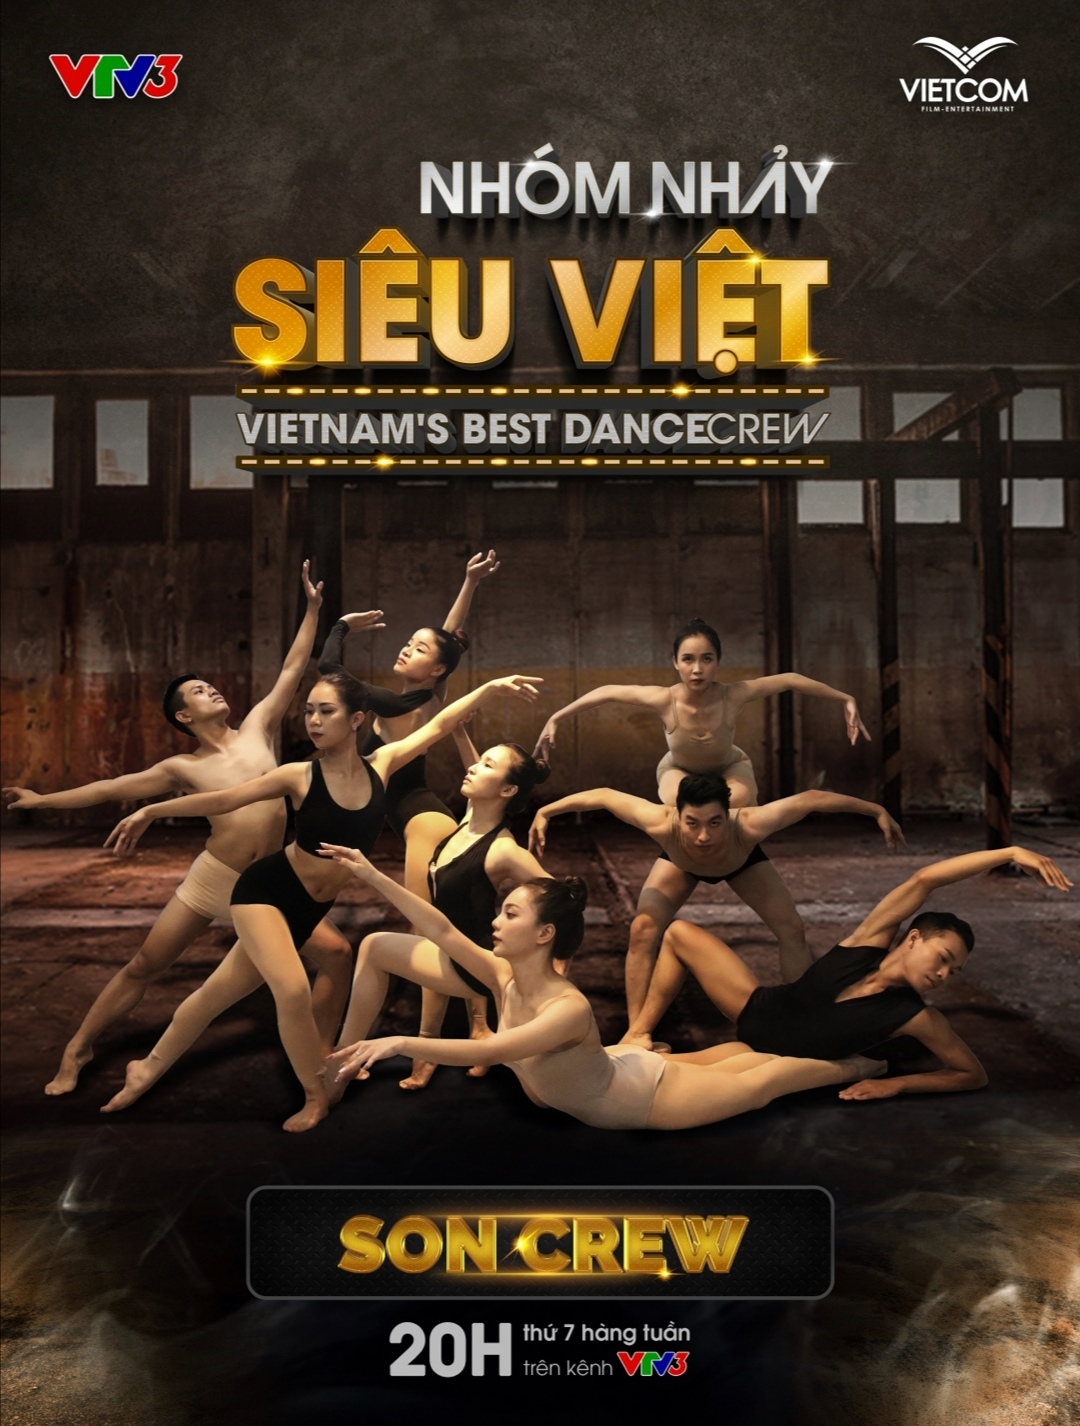 Screenshot 20210519 172018 Biên đạo Alex Tú mang nhóm nhảy đến với sân chơi Nhóm nhảy siêu Việt   Vietnam’s Best Dance Crew